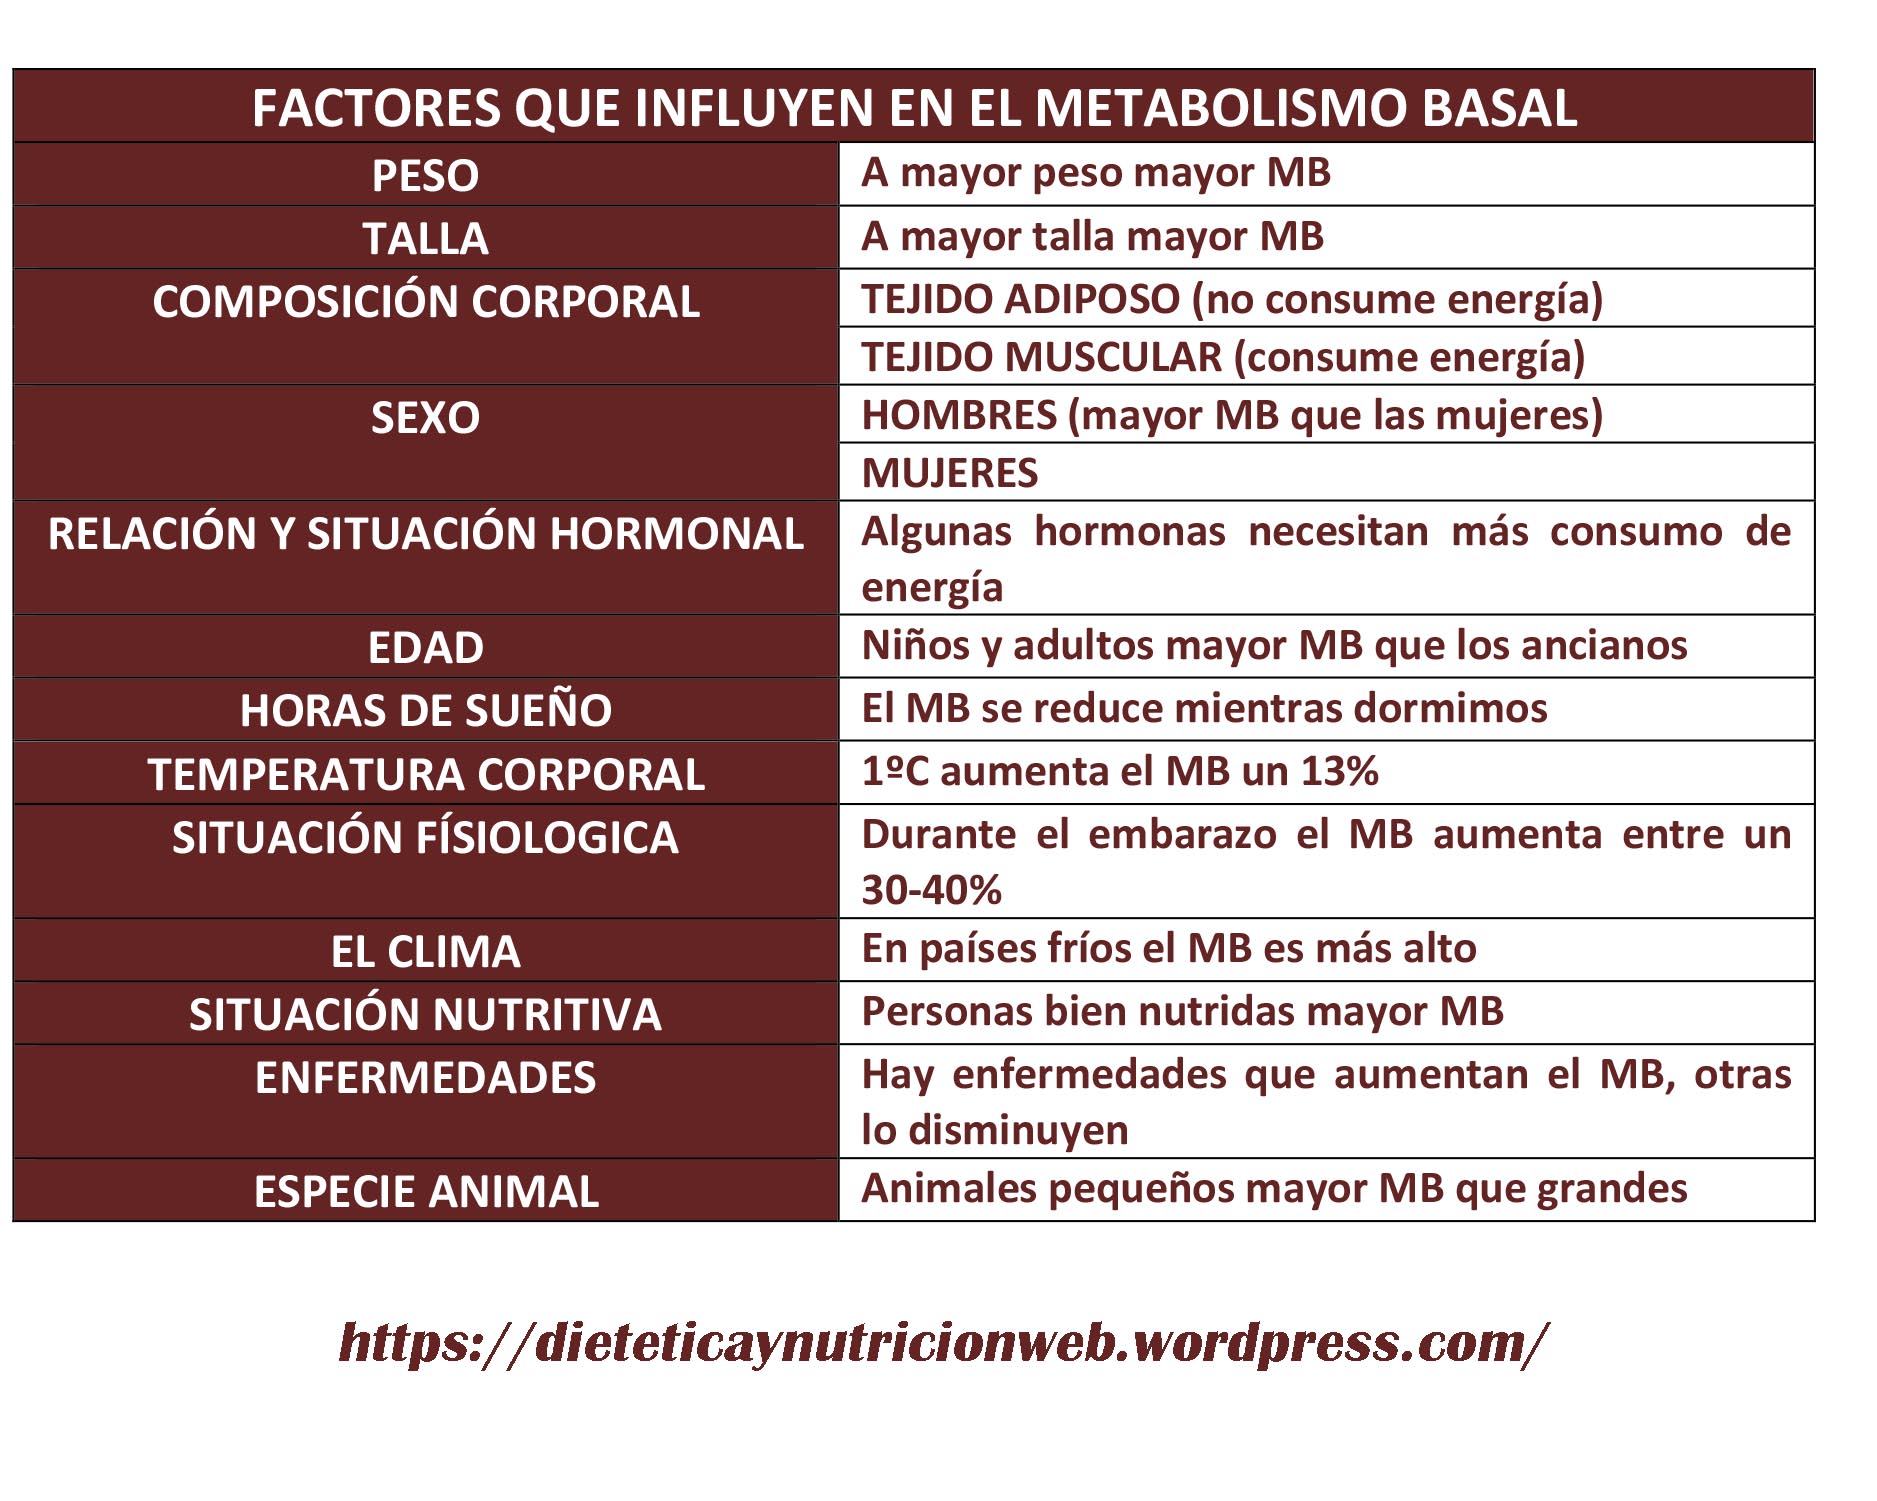 FactoresMetabolismo Basal.jpg